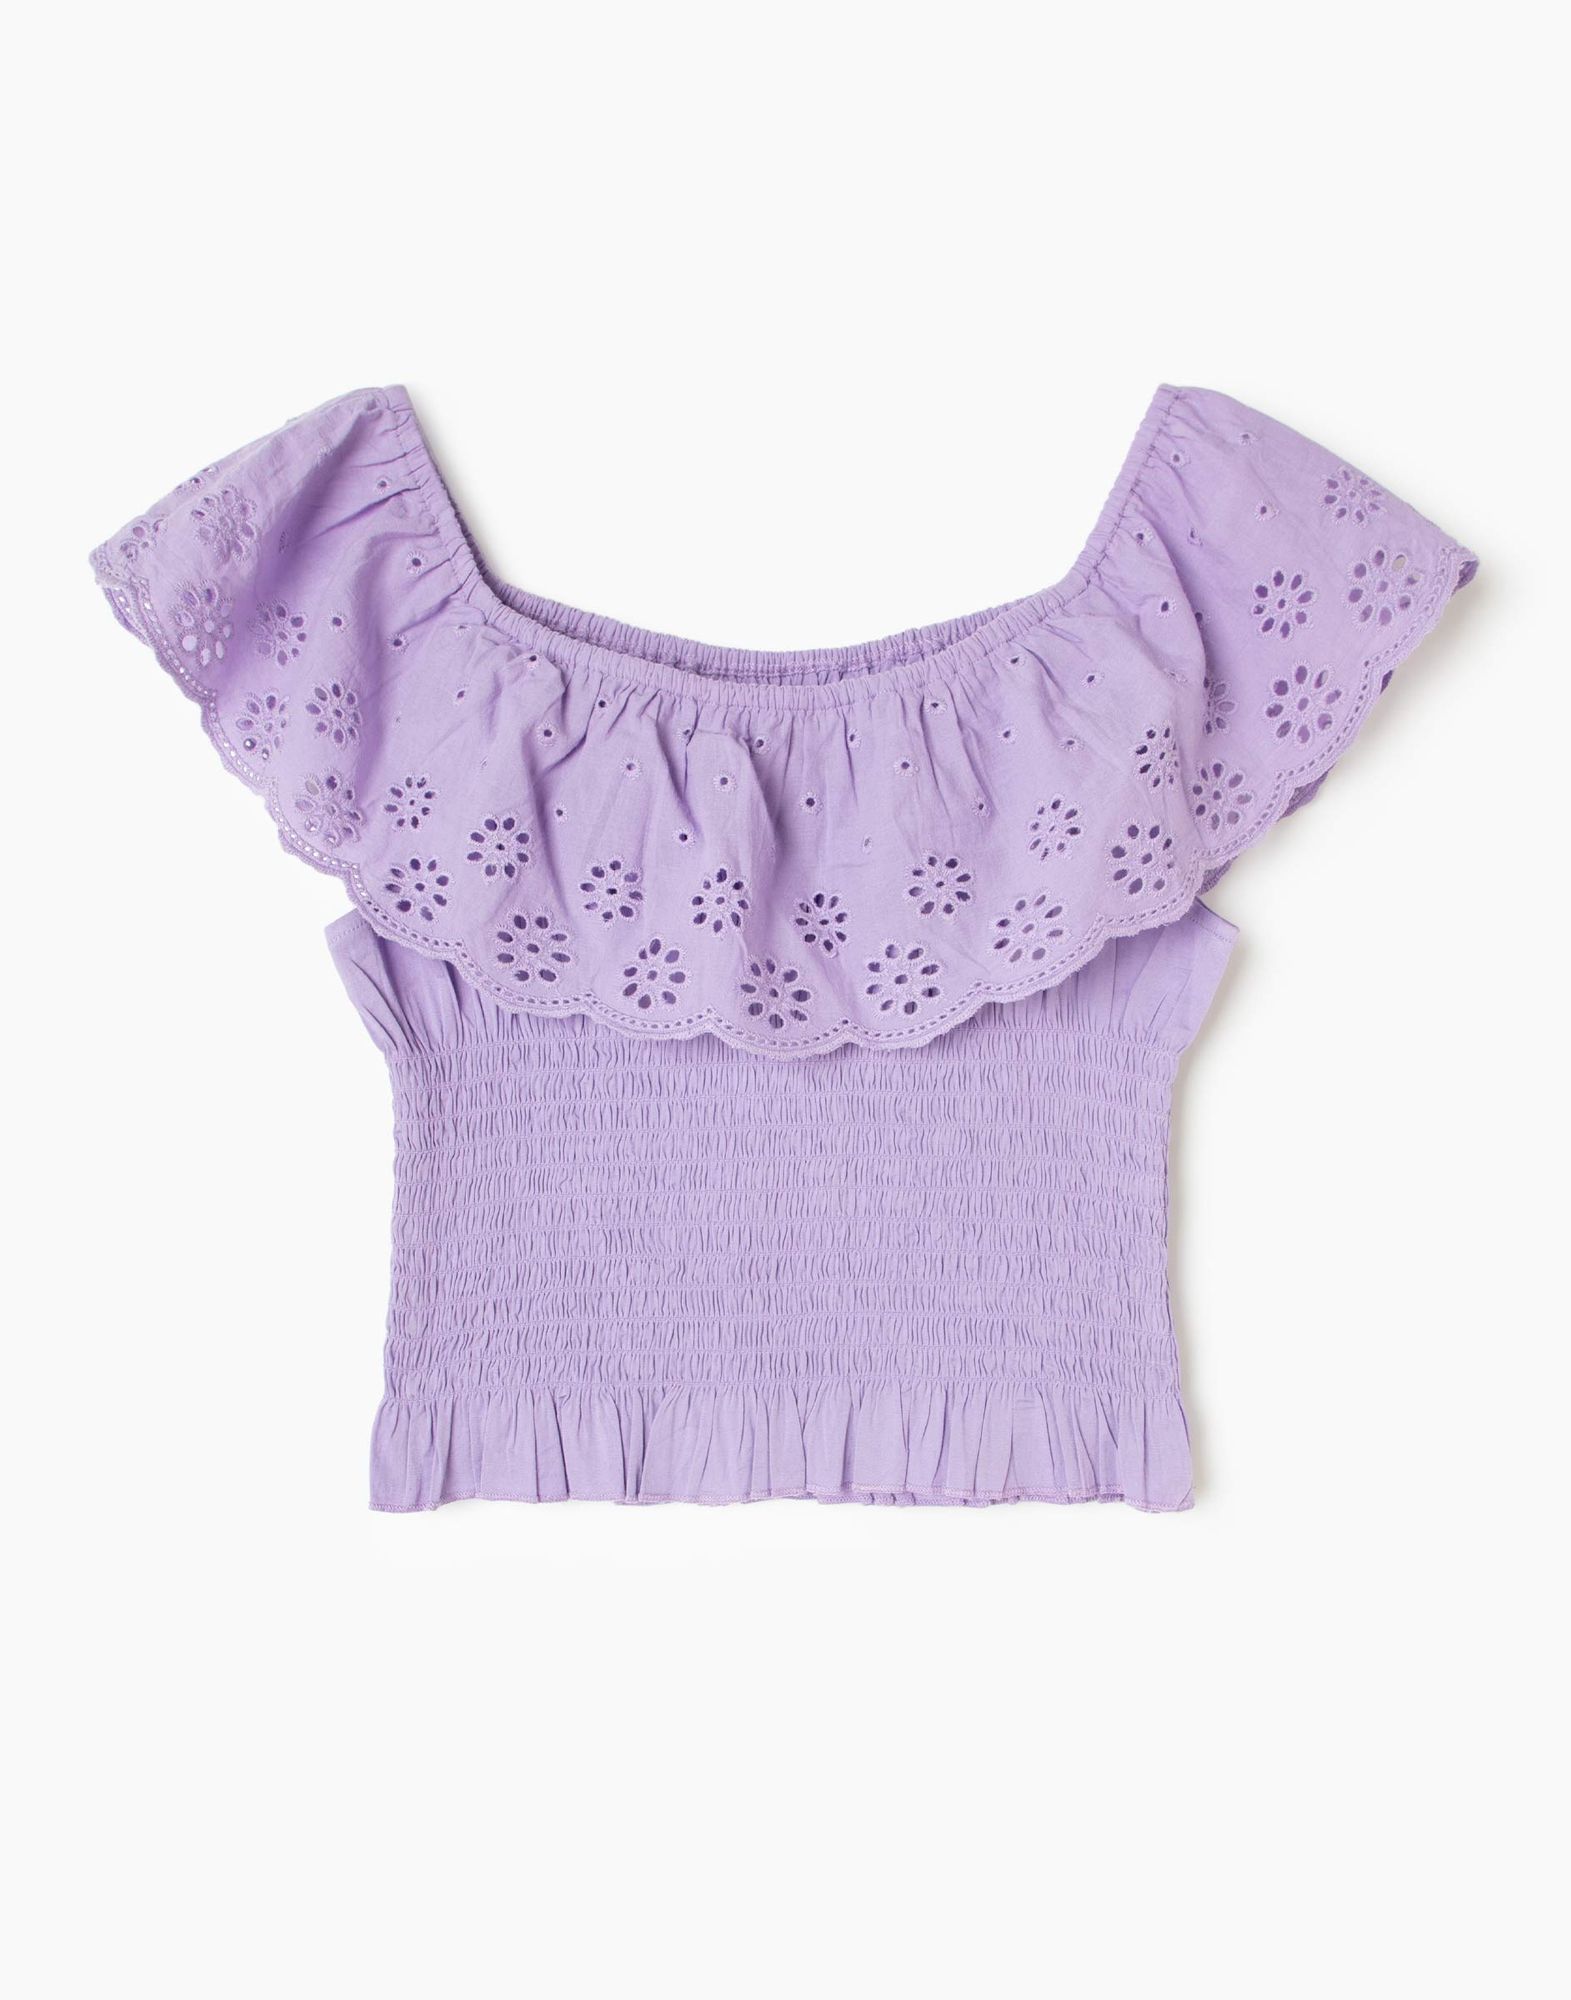 Фиолетовая блузка с вышивкой ришелье и открытыми плечами-0